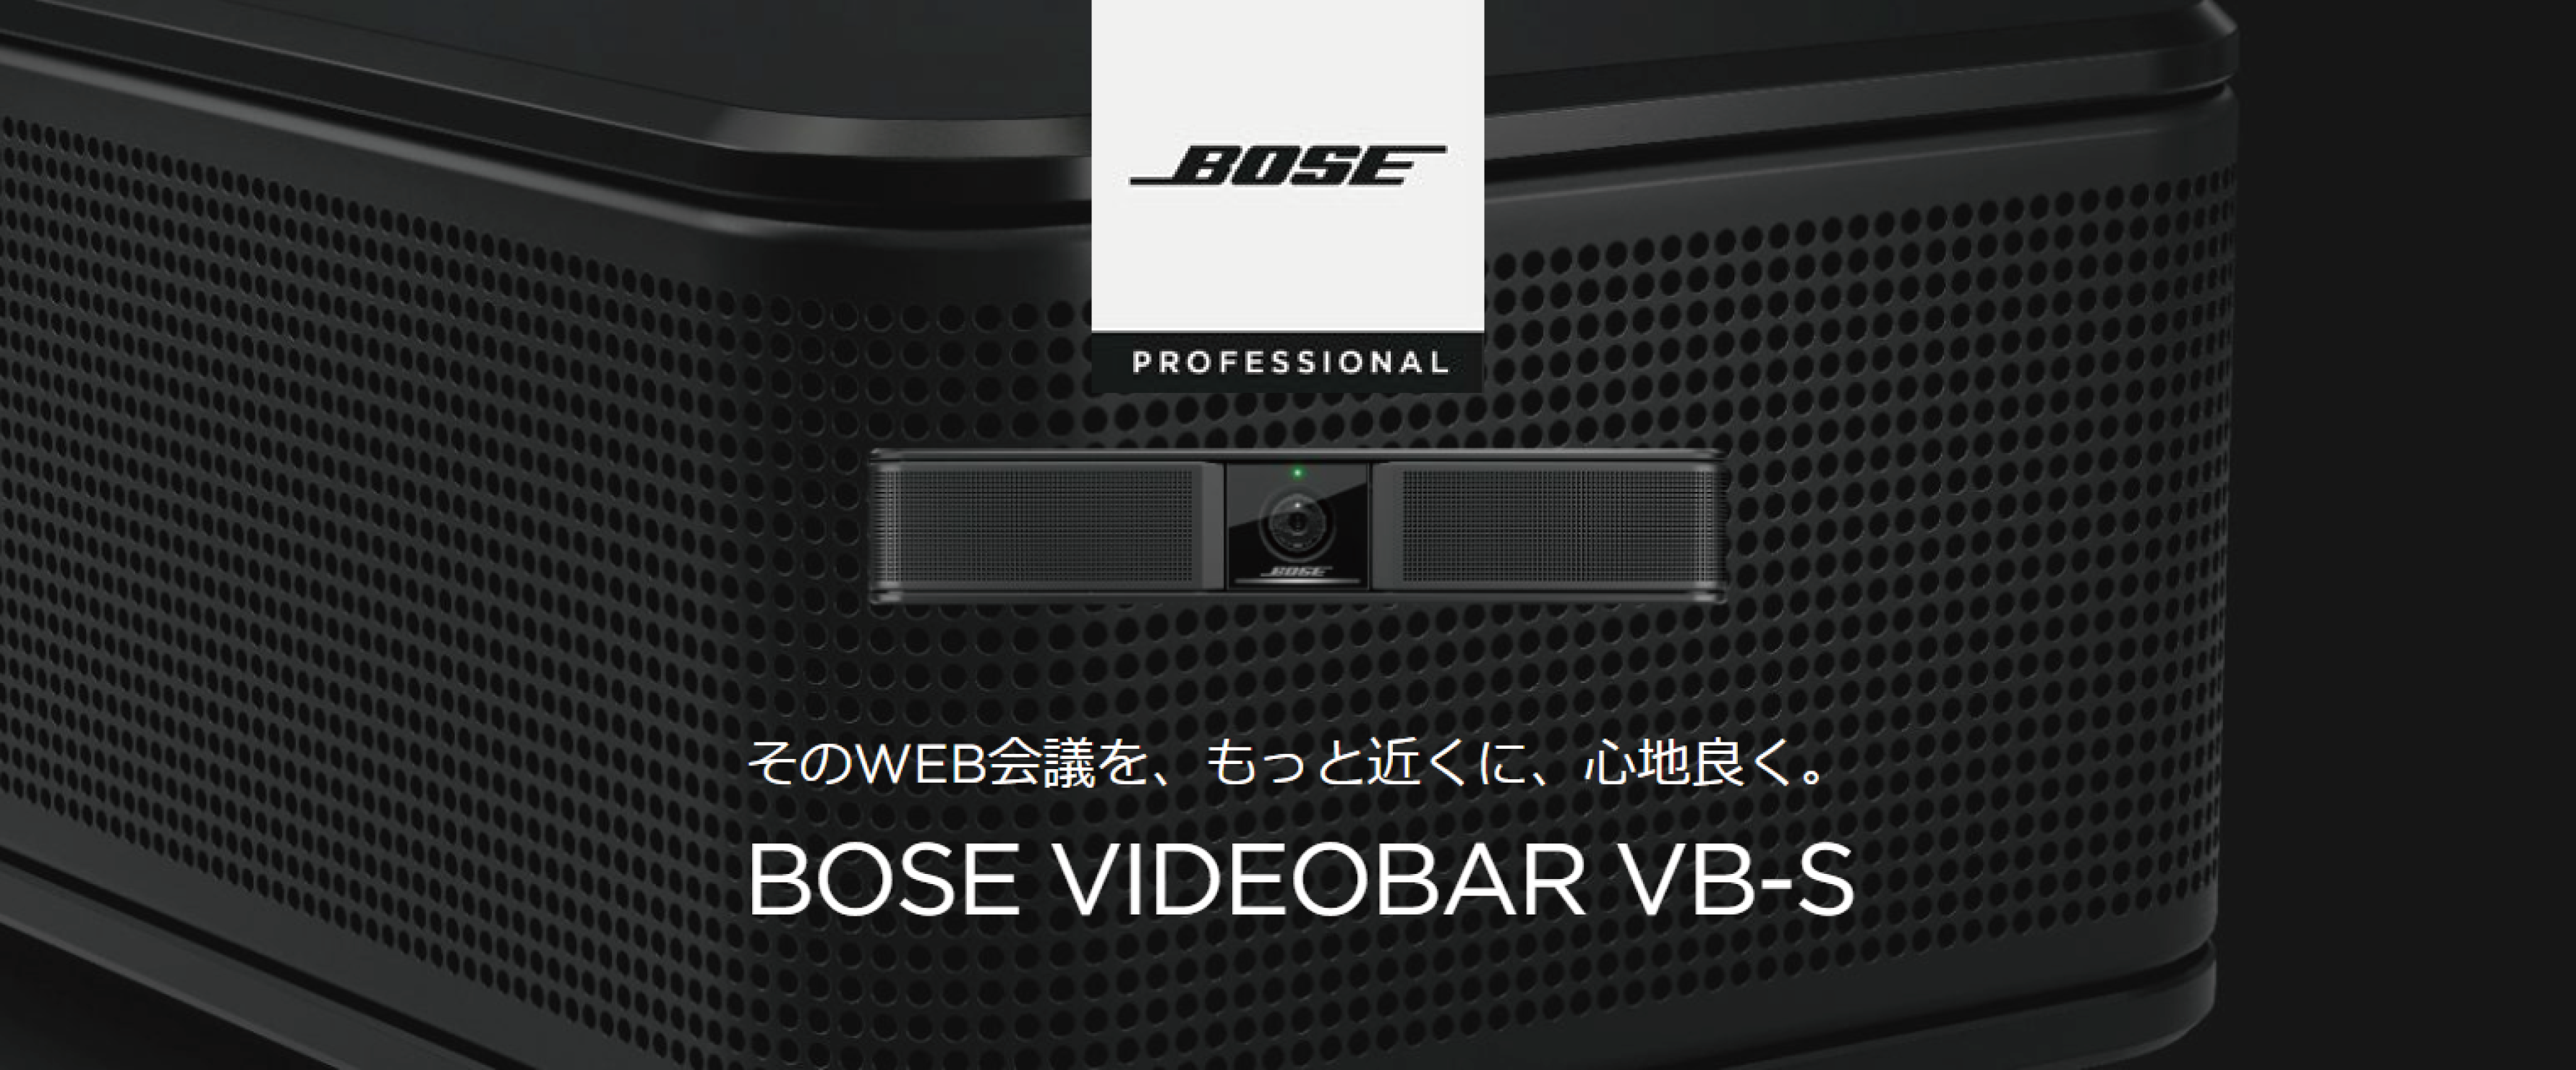 マーケット <br>ボーズ WEB会議システム Videobar VB-S ad-naturam.fr